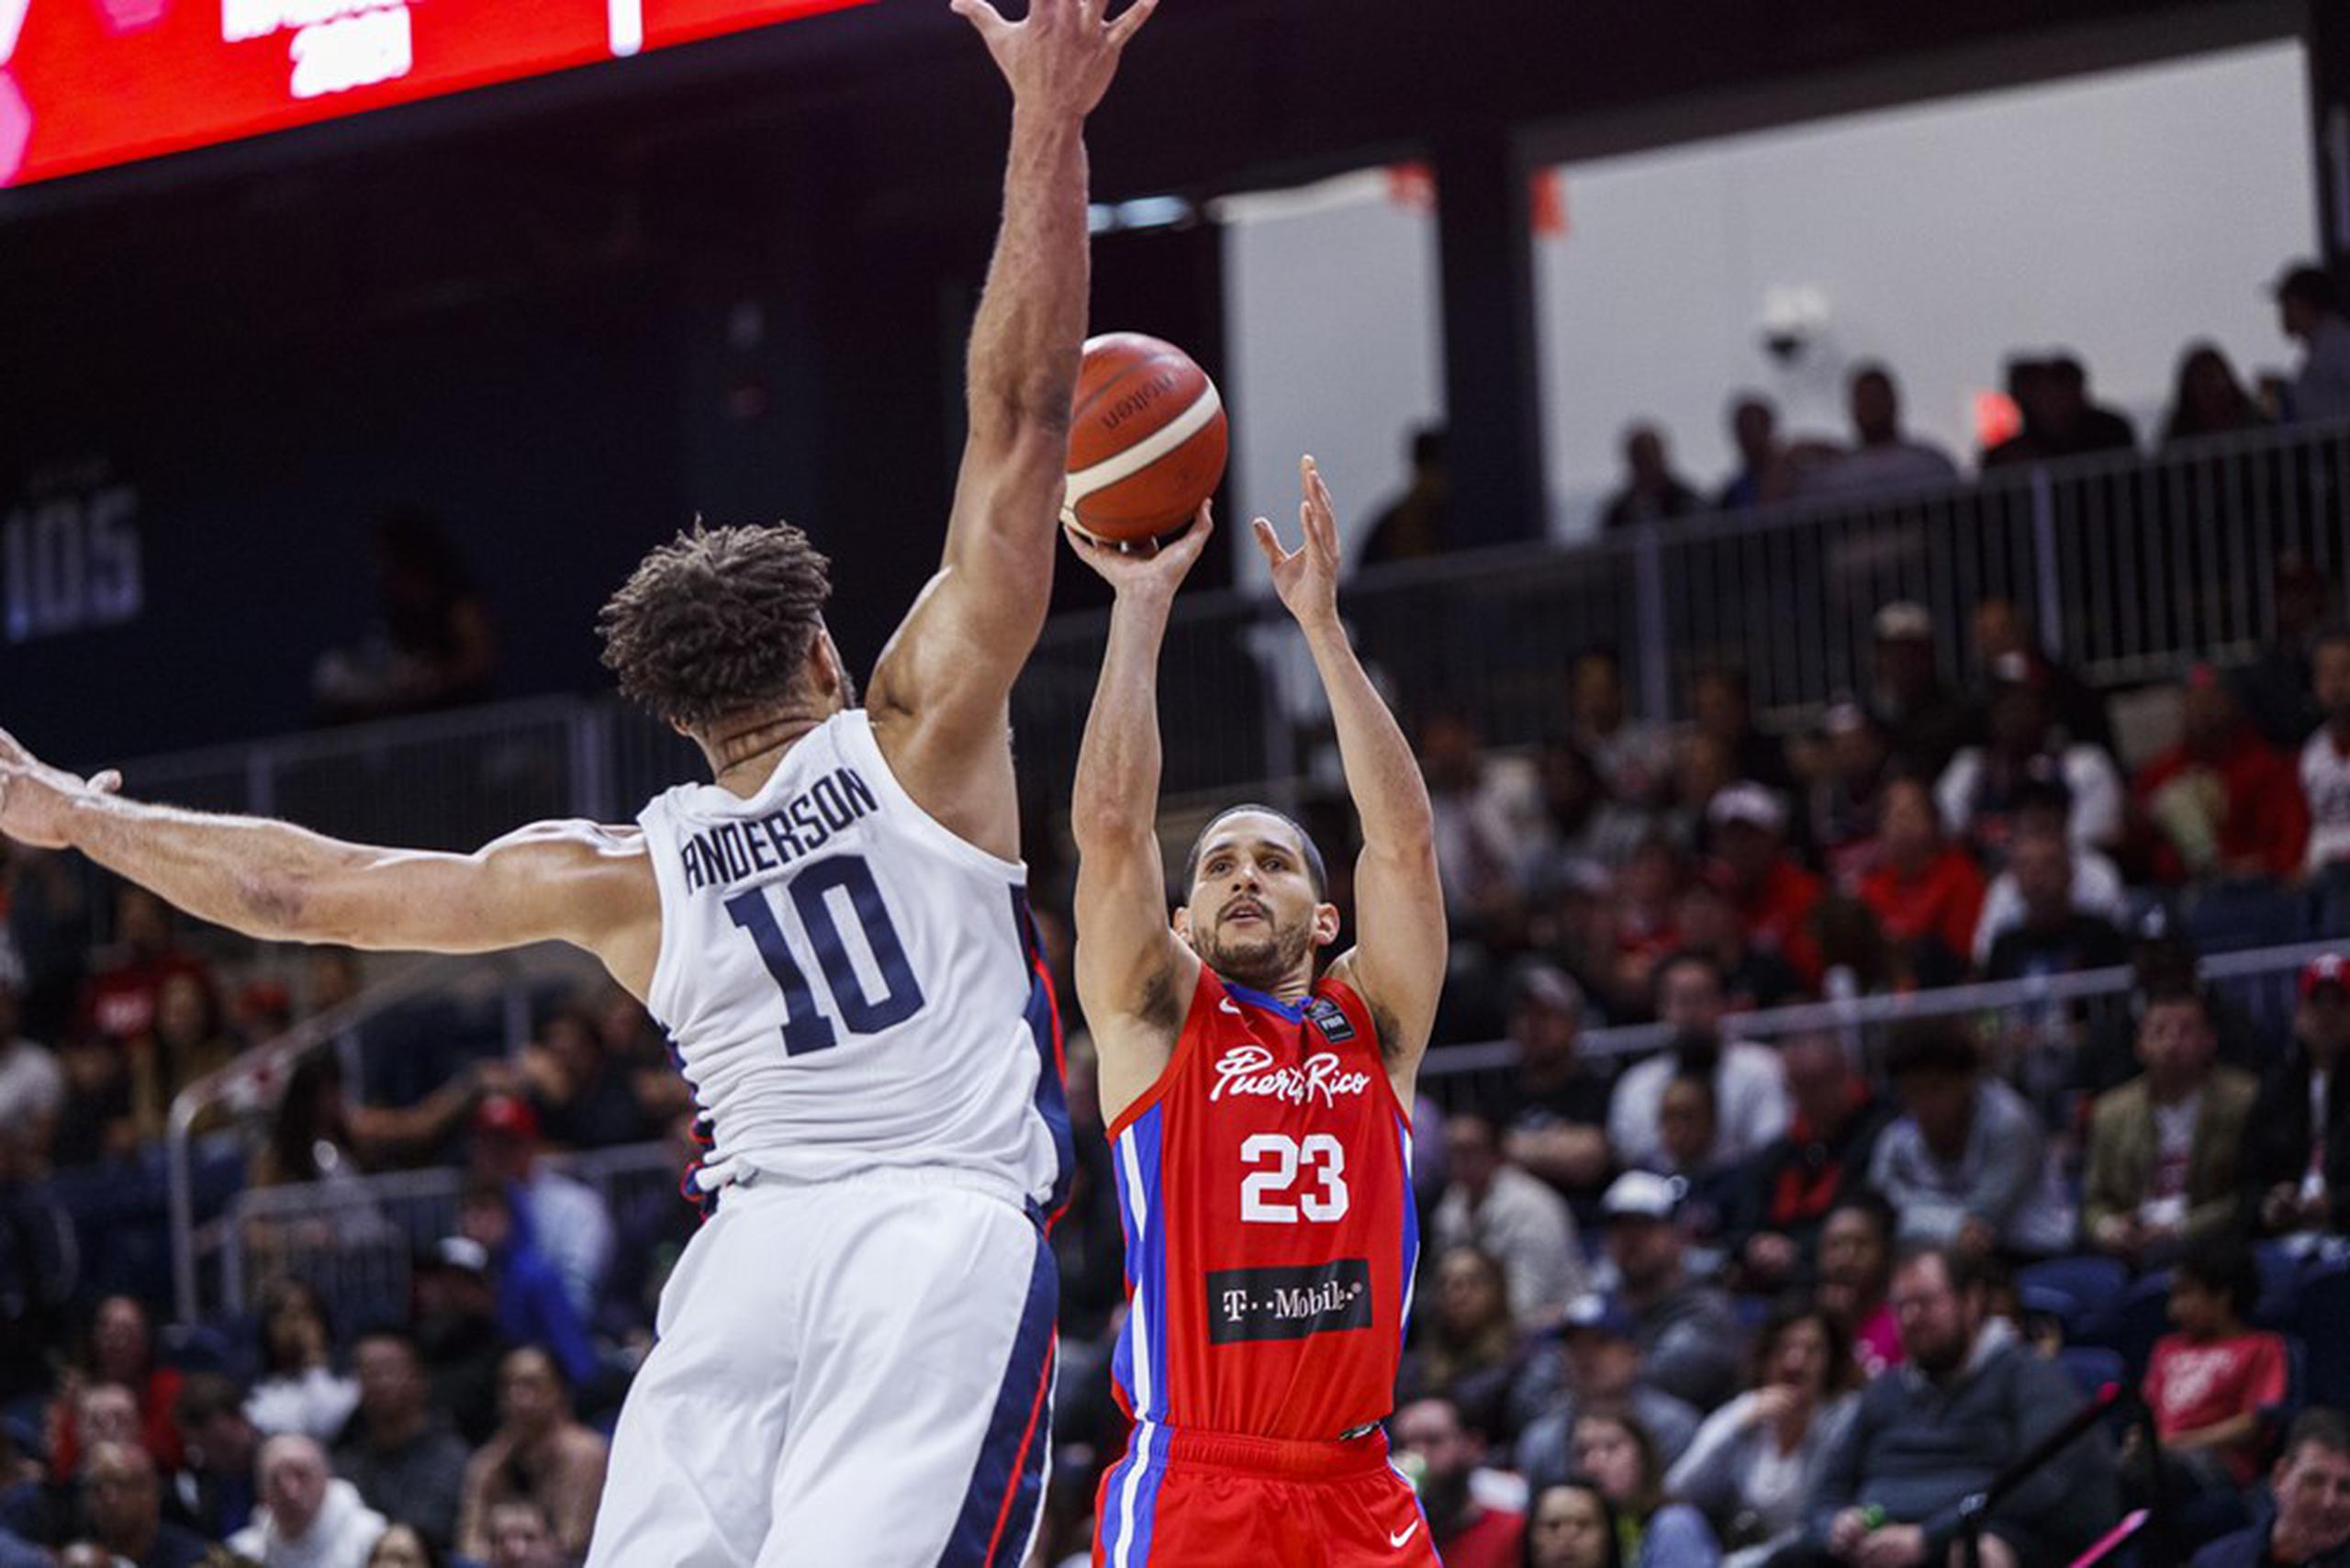 Isaac Sosa tuvo un buen tiempo de juego por Puerto Rico en el partido. Terminó el juego con 15 puntos. (FIBA)